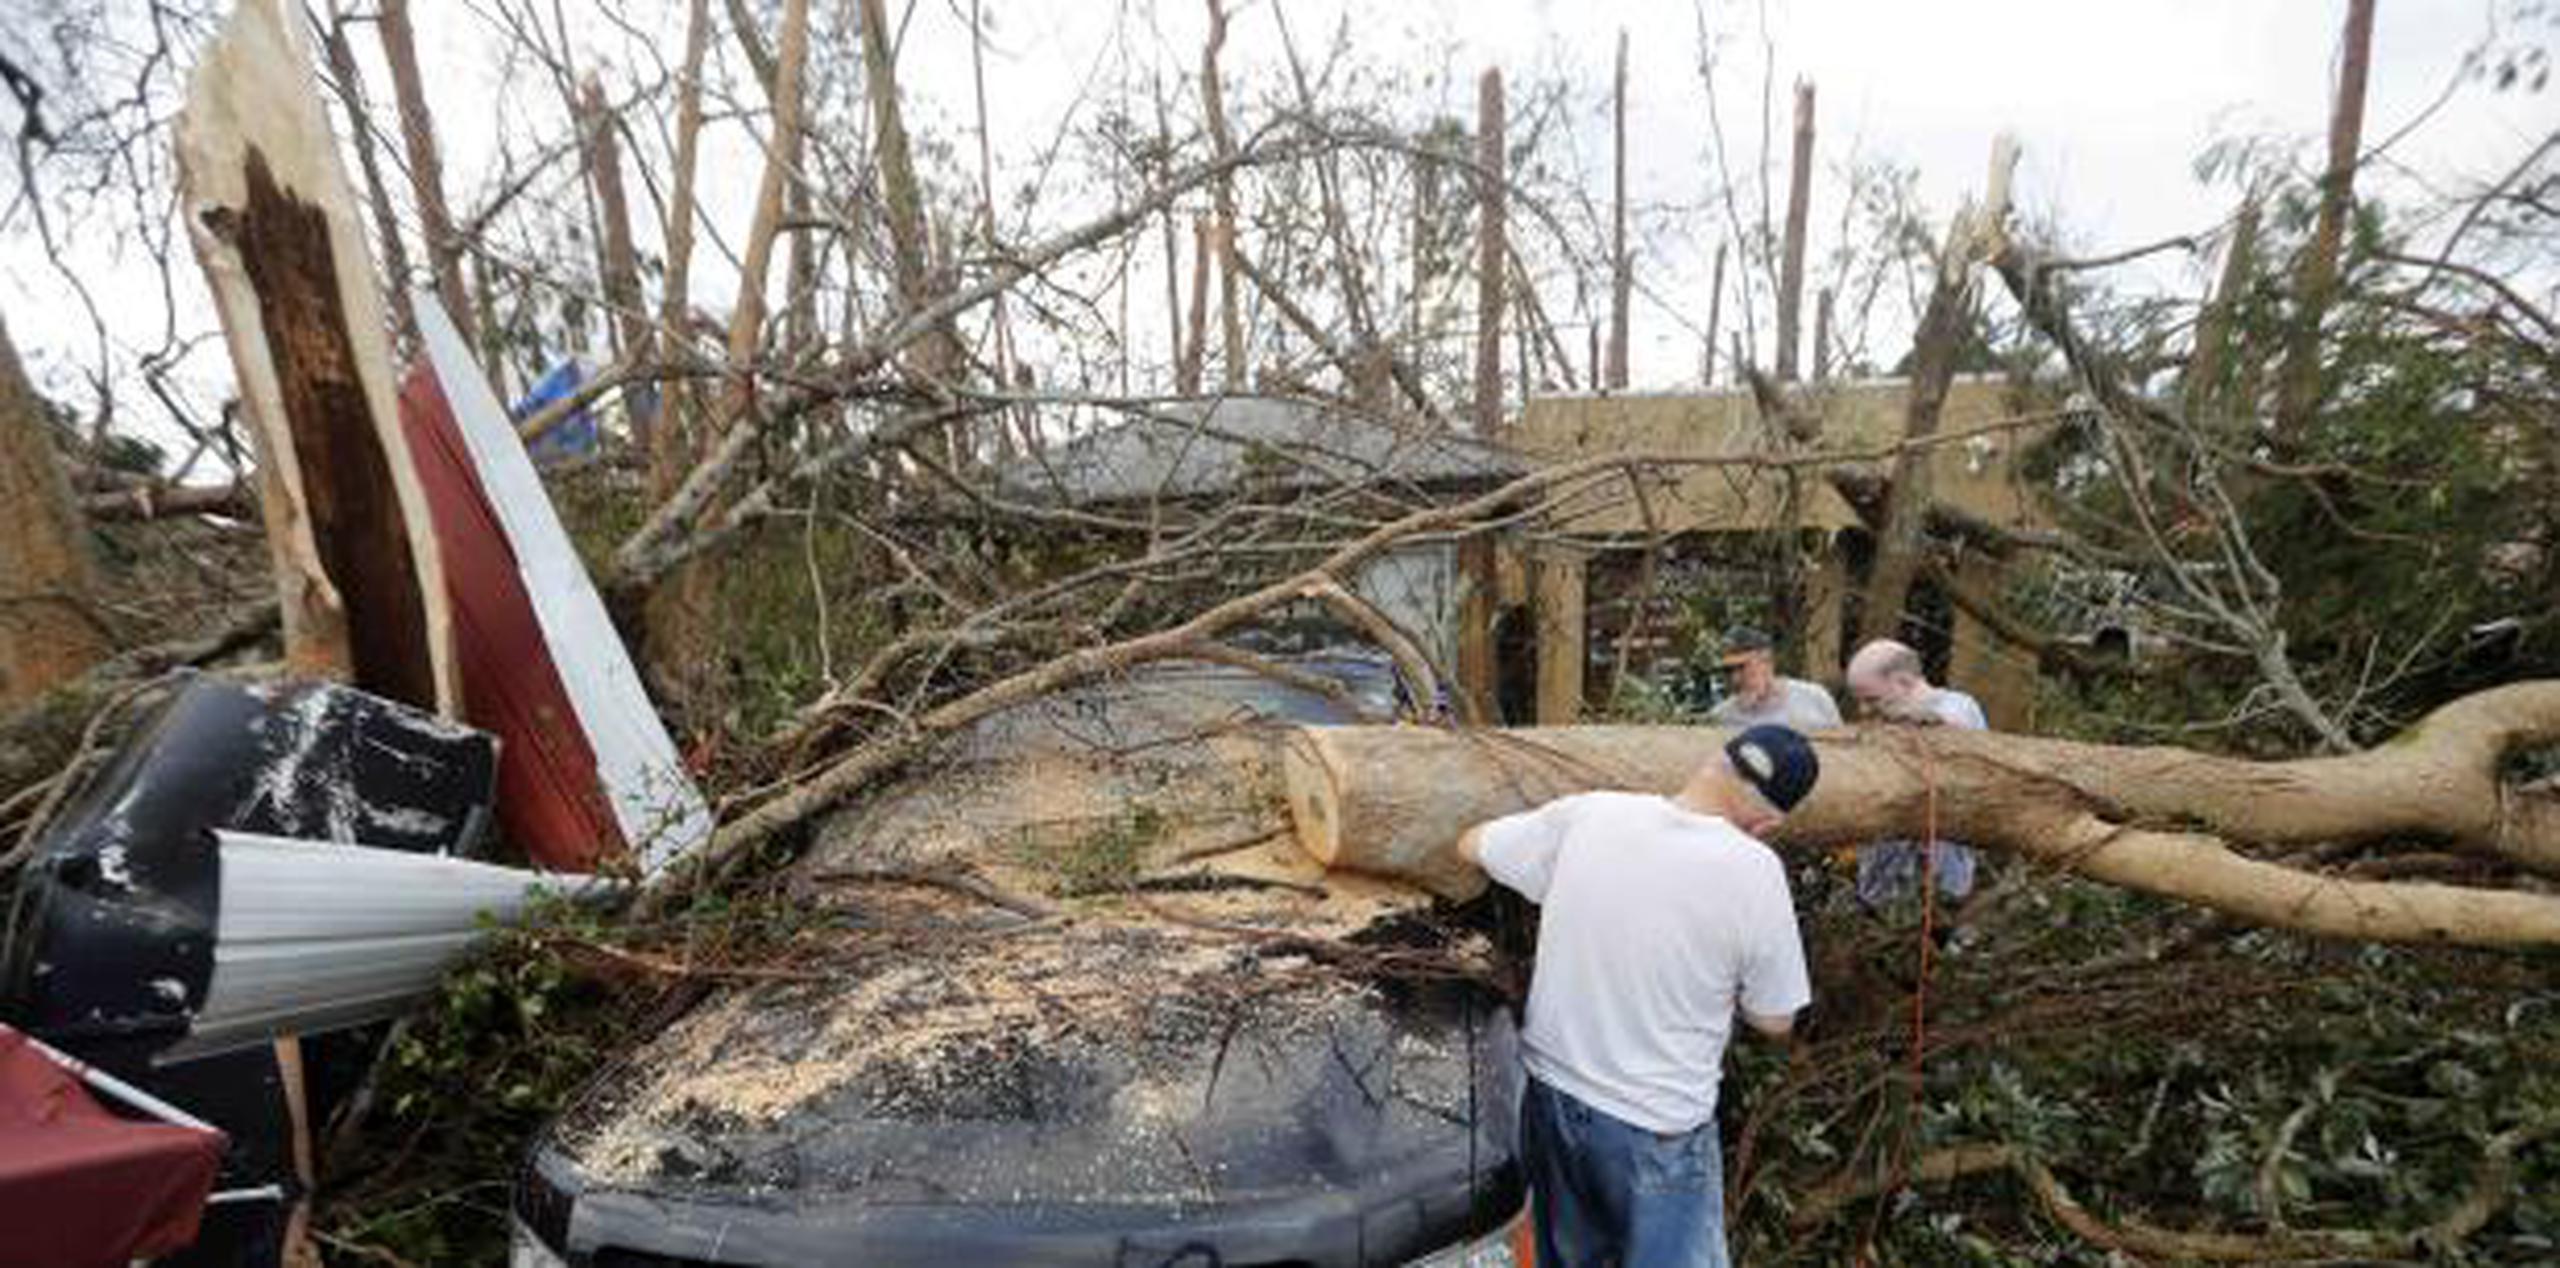 Personas cortan un árbol que cayó encima de un vehículo, en Panama City, Florida. (AP / Gerald Herbert)